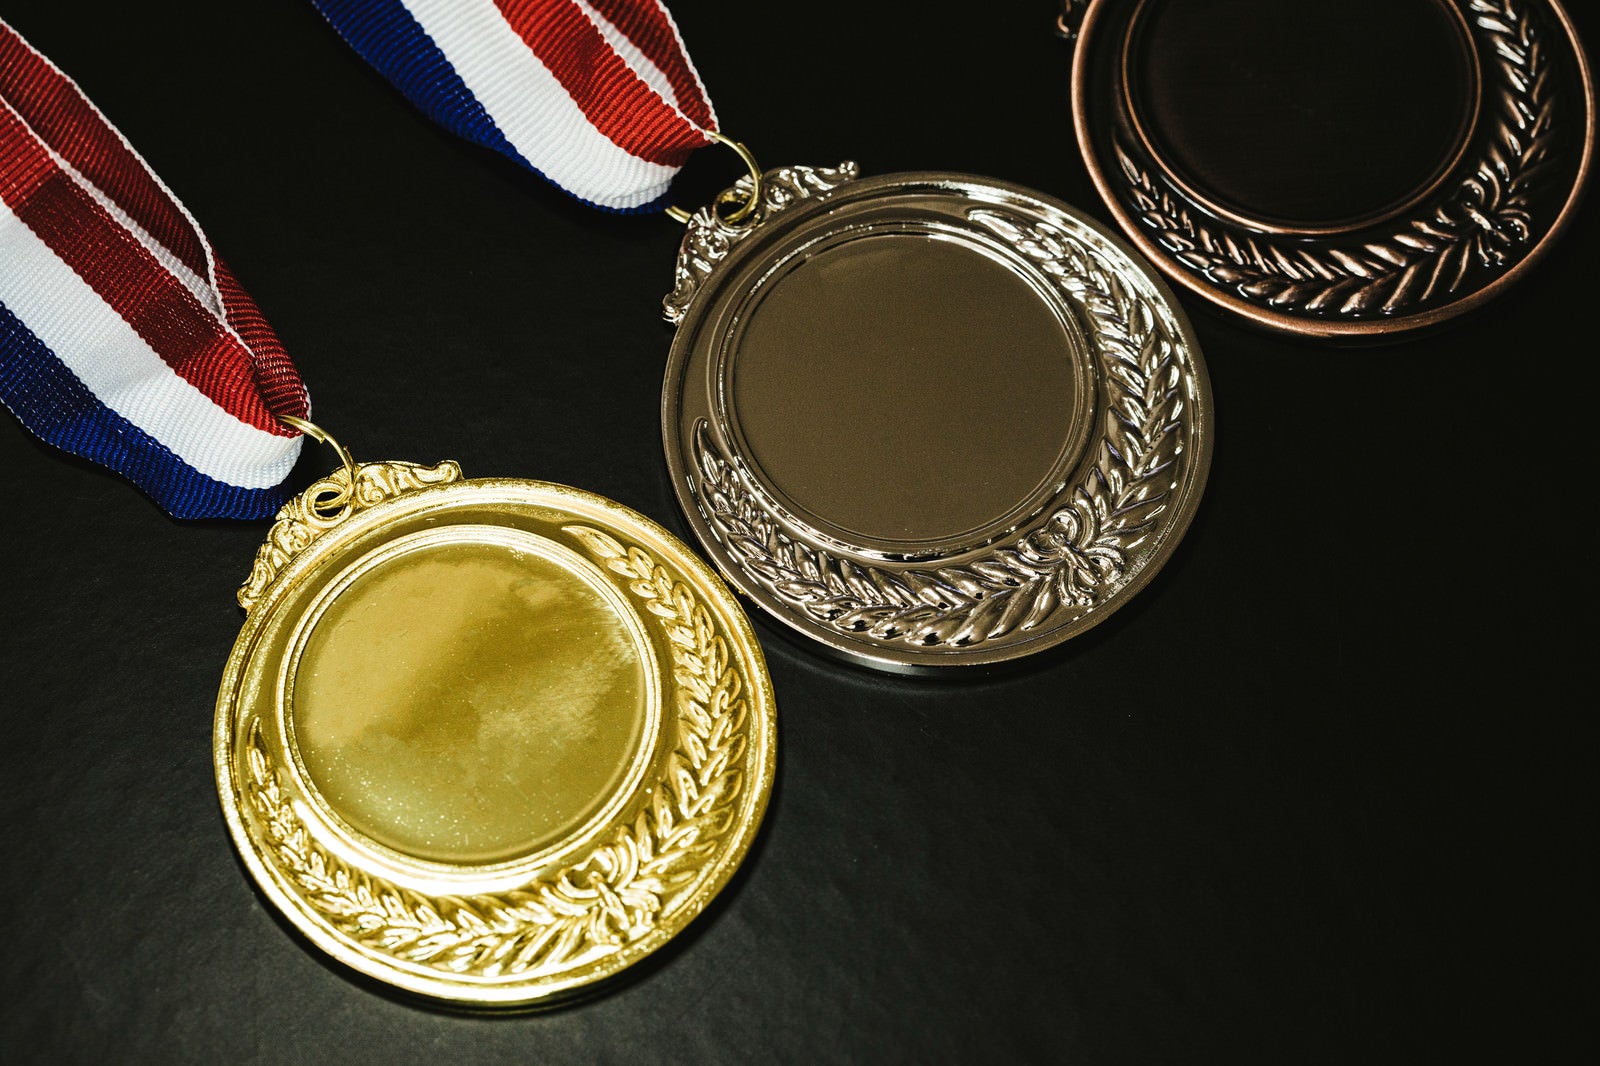 「金メダルと他の色のメダル」の写真